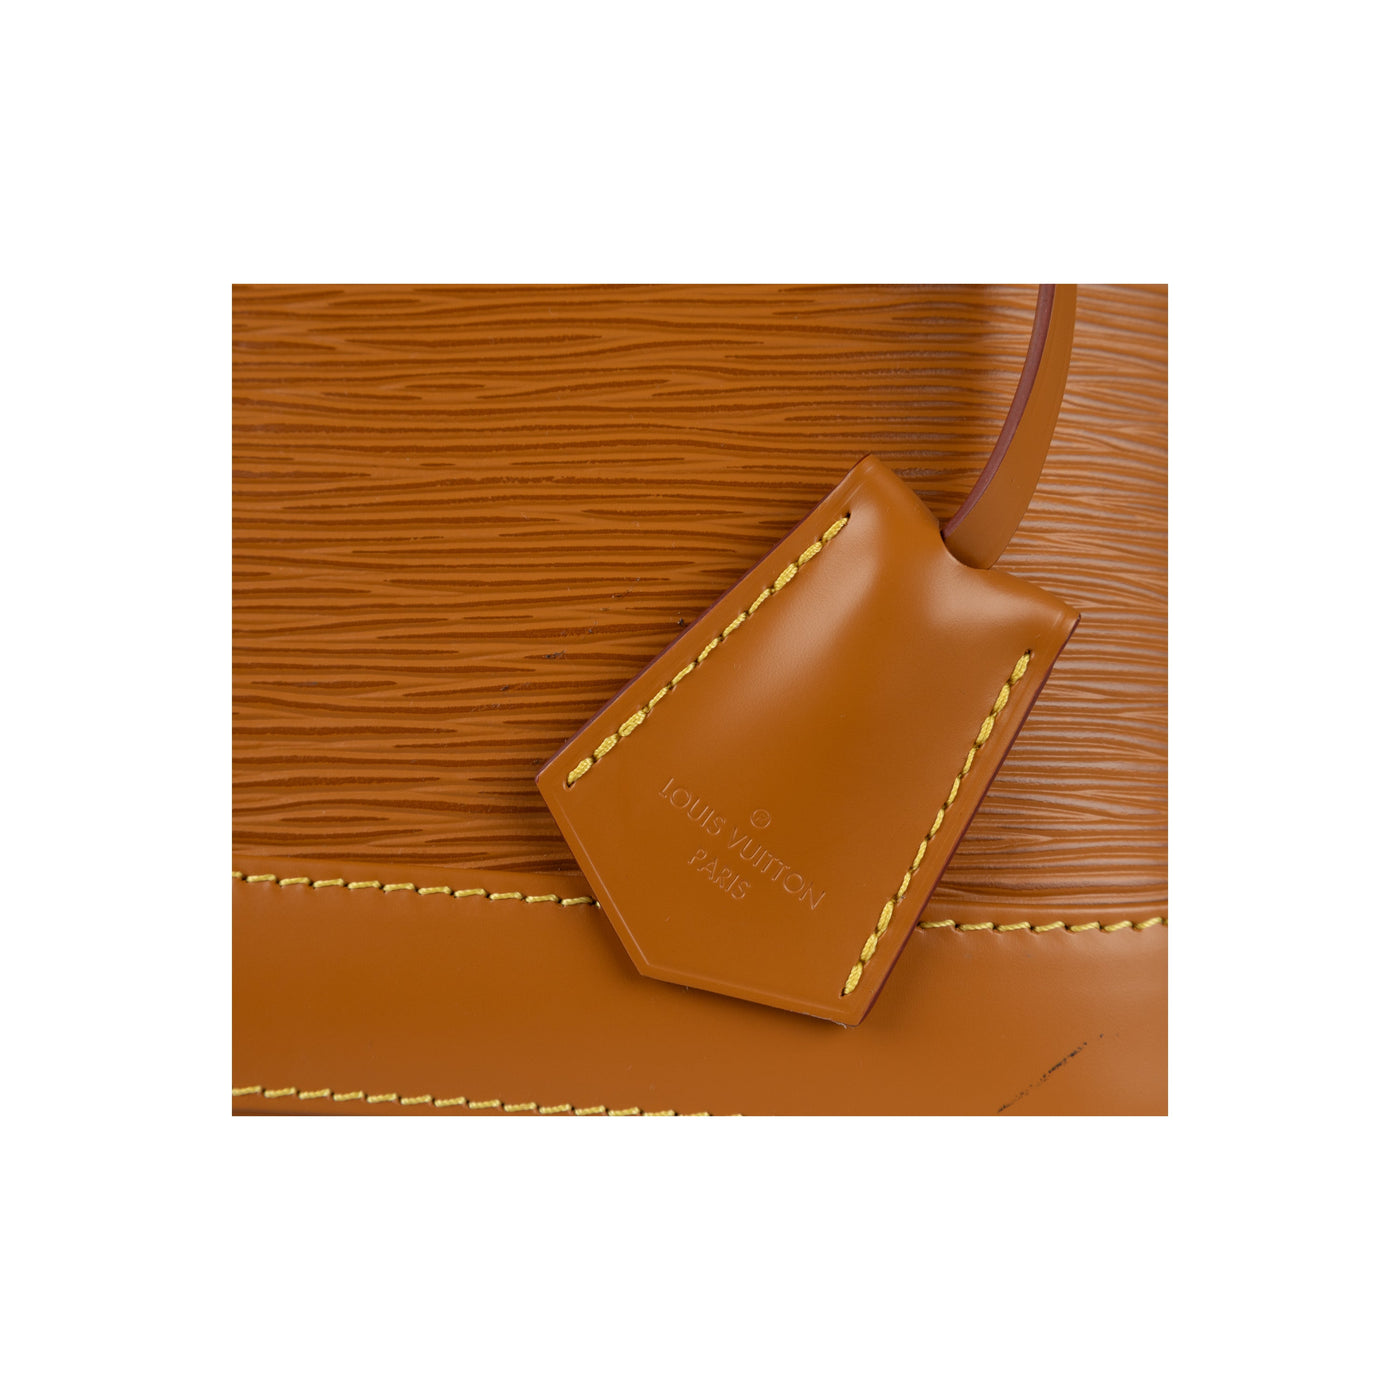 Secondhand Louis Vuitton Epi Alma BB Handbag 